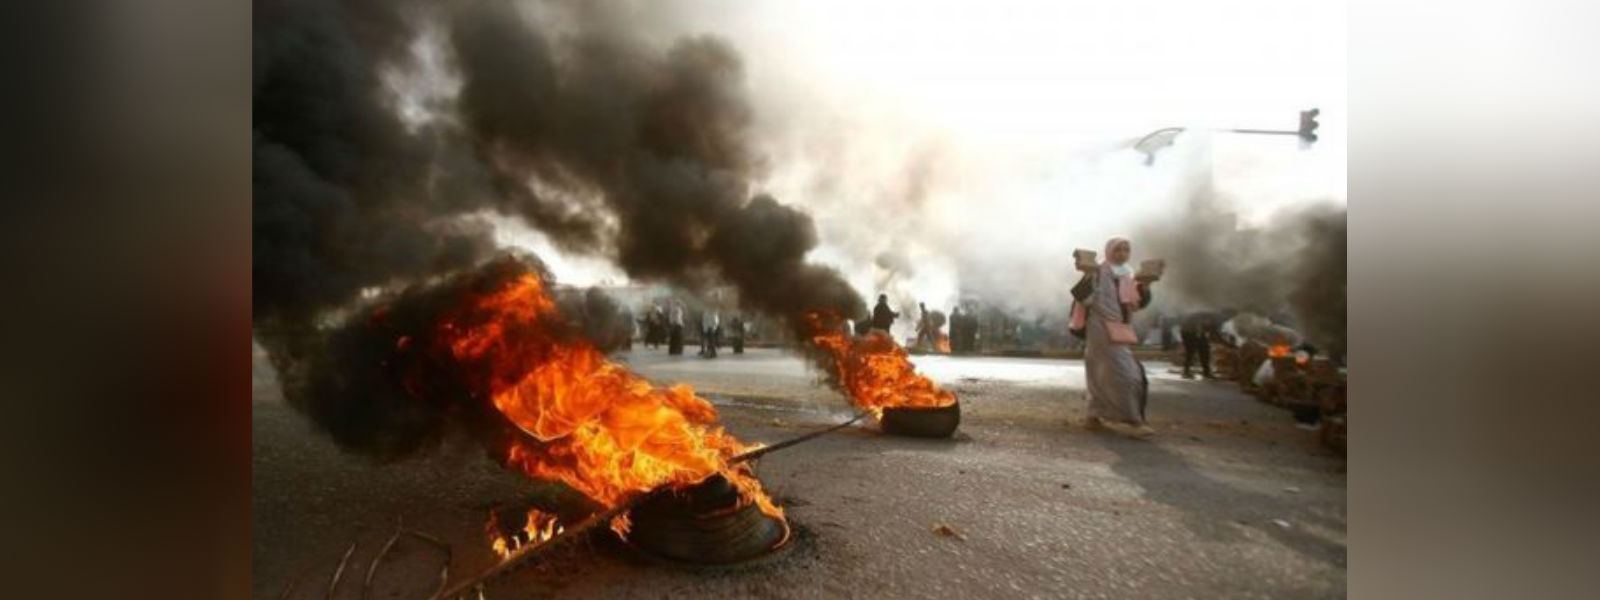 சூடானில் எதிர்ப்பு ஆர்ப்பாட்டங்கள்: 13 பேர் பலி 